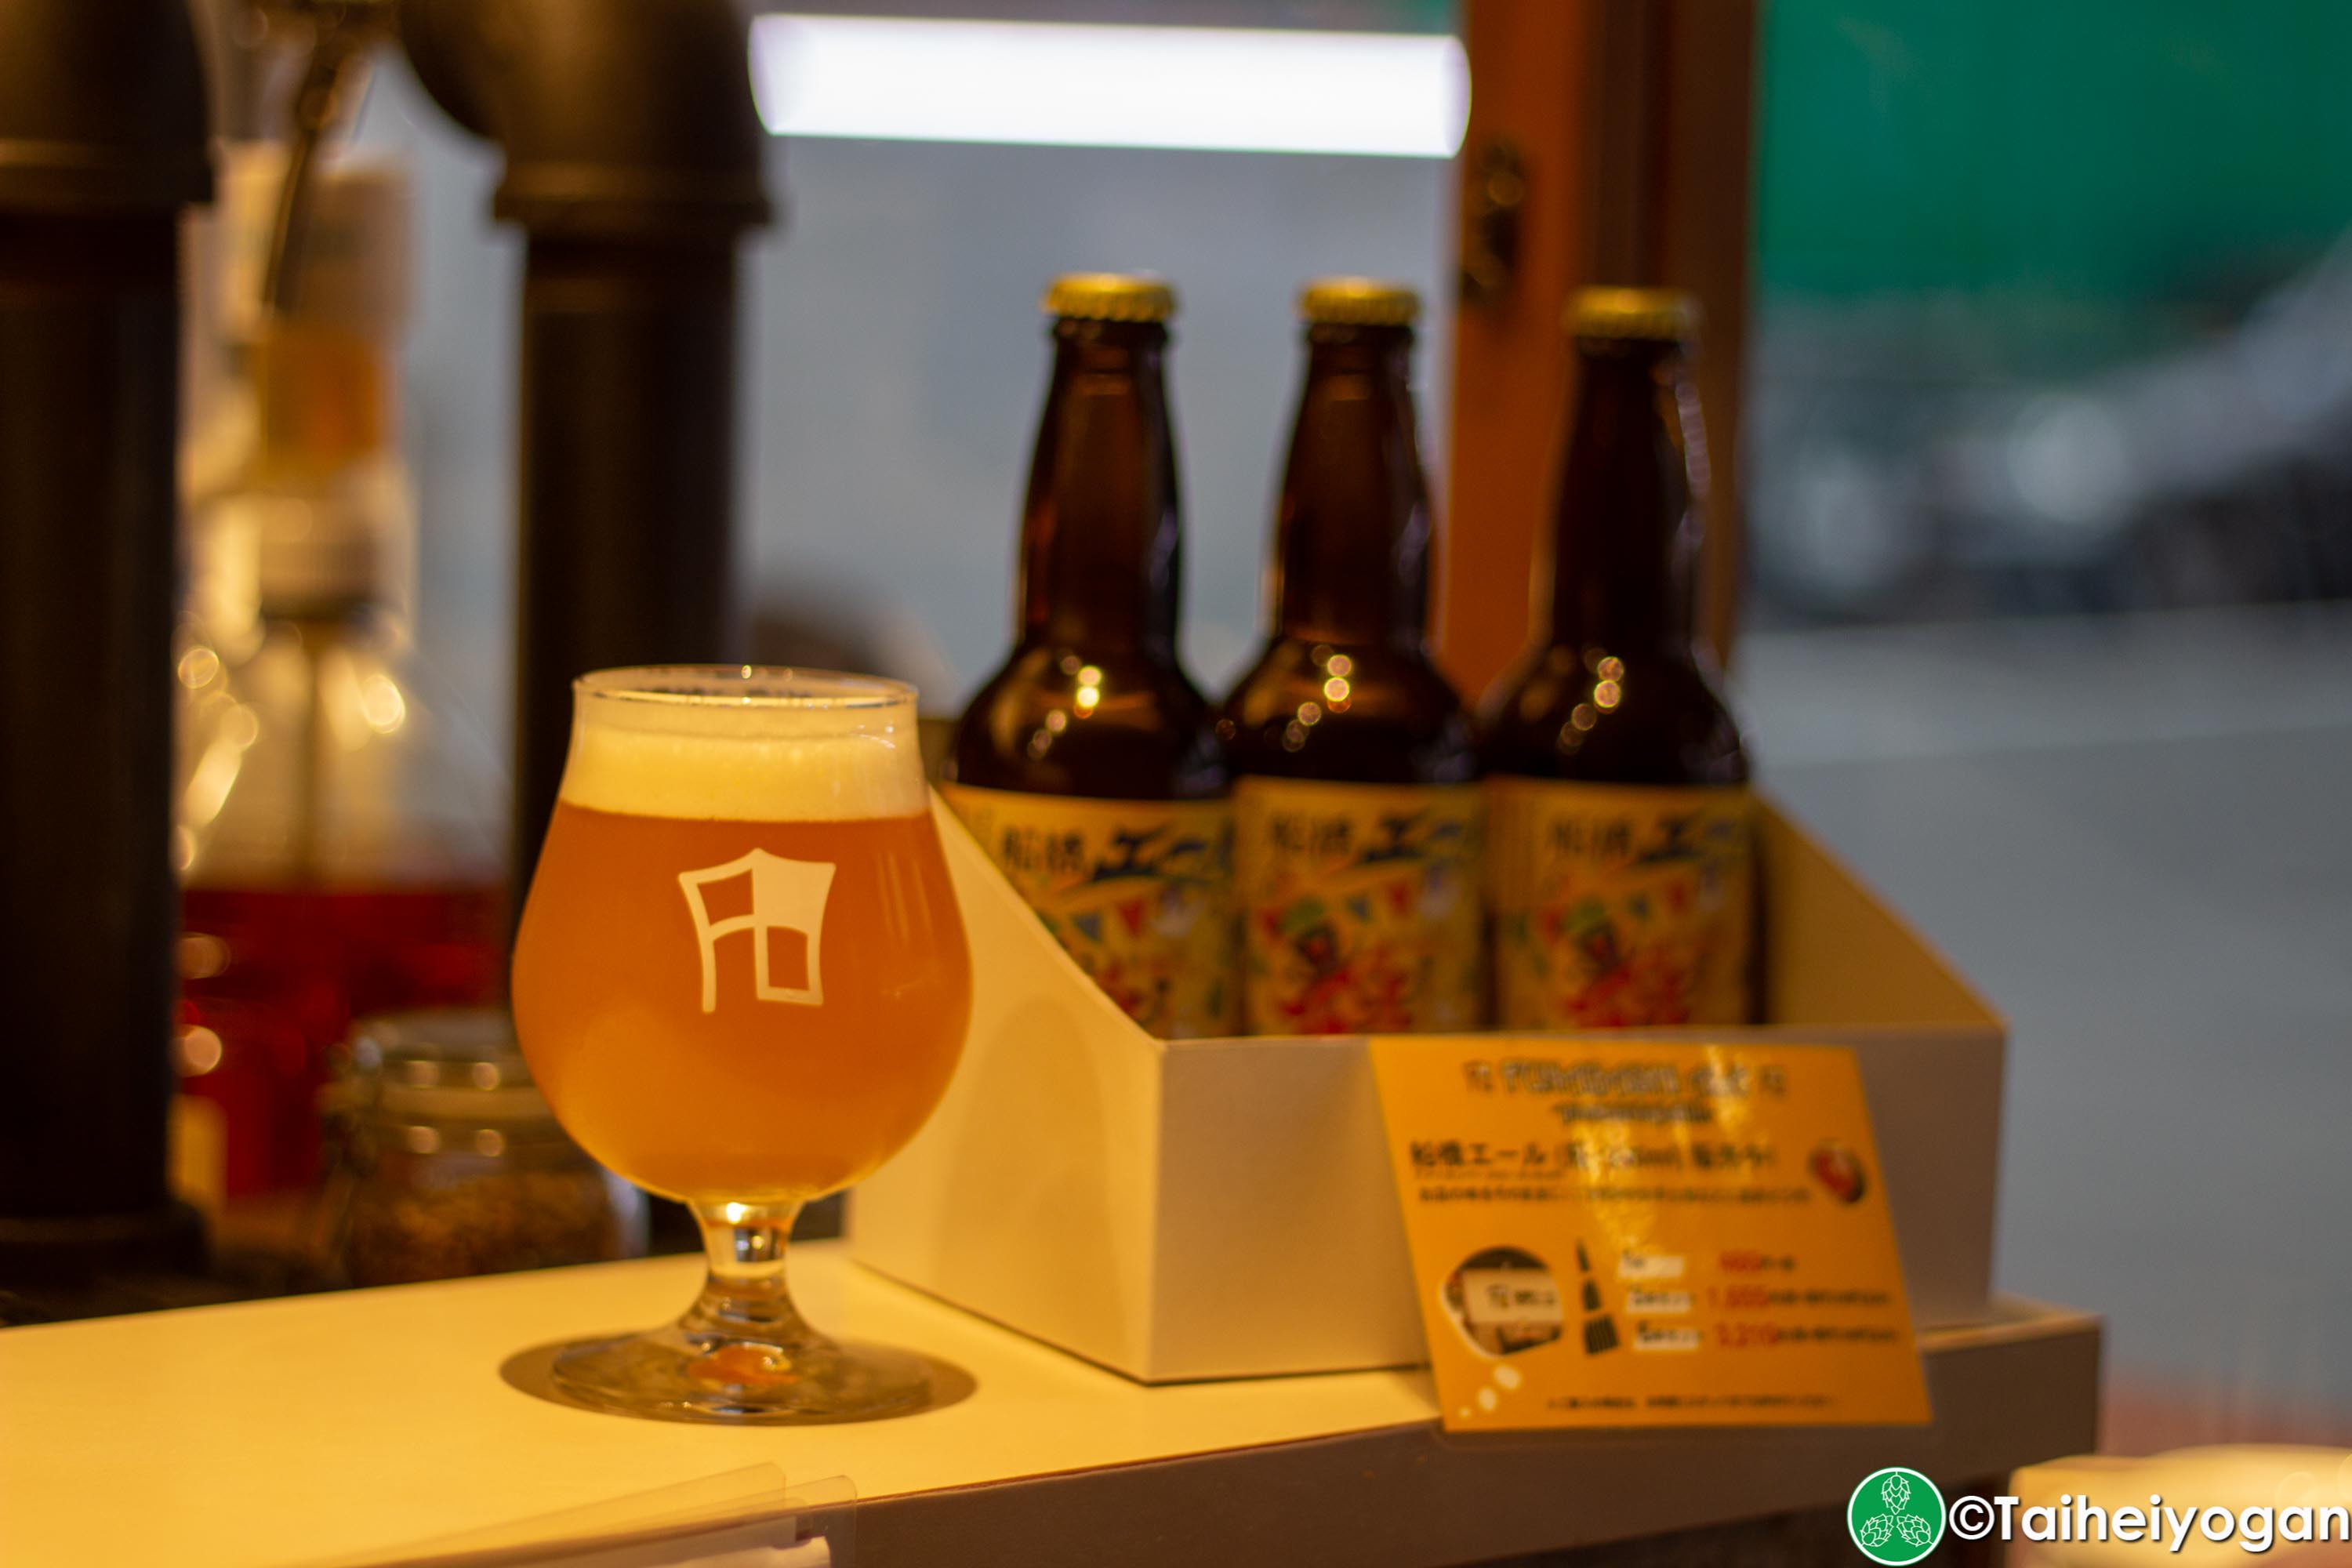 Funabashi Beer - 船橋ビール醸造所 - Menu - Craft Beer